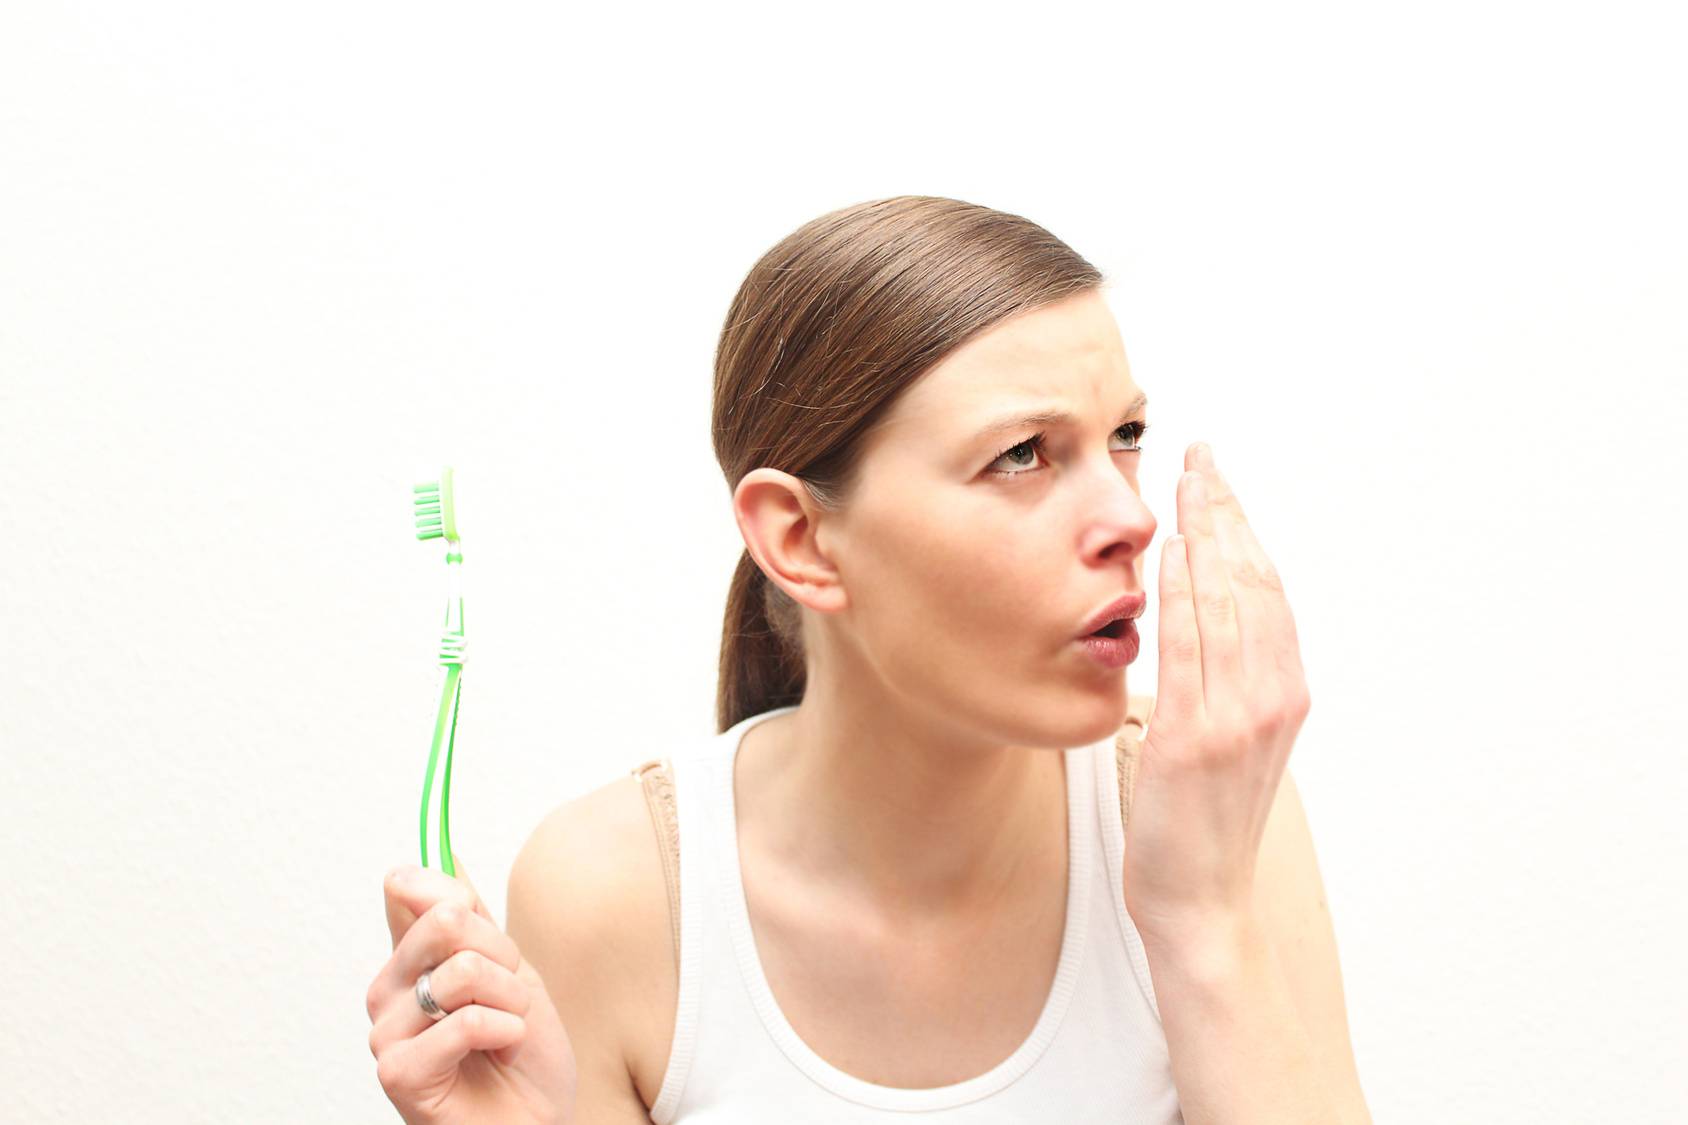 Гнилостный запах изо рта: причины зловонного запаха гнили, как избавиться, лечение